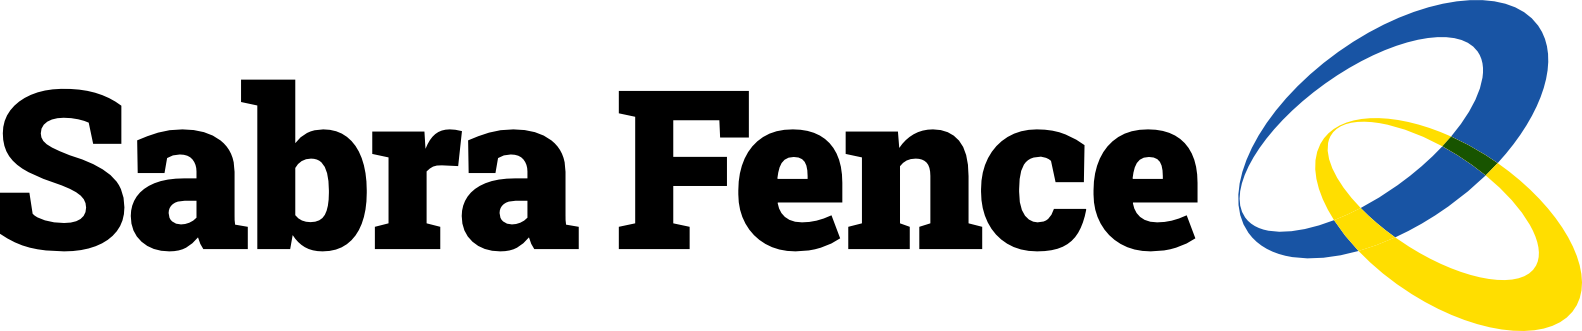 SabraFence logo